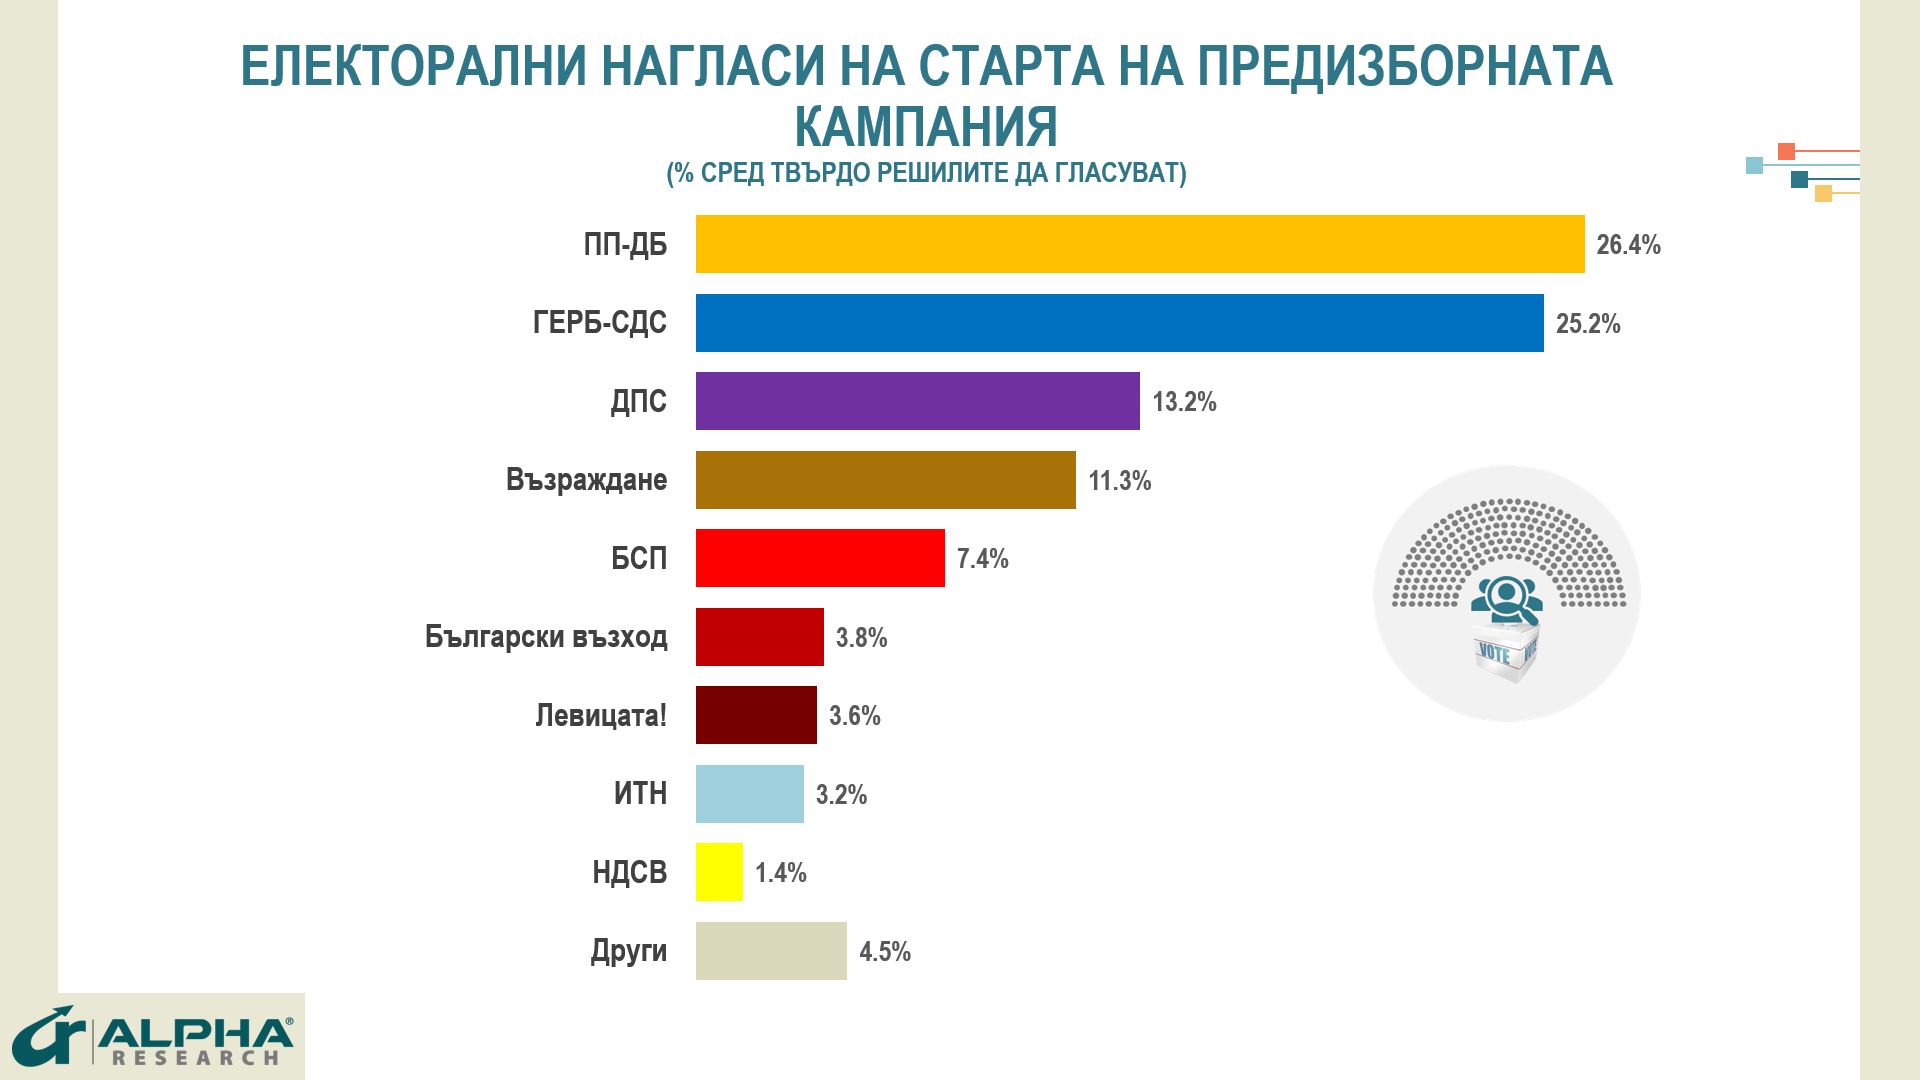 Коалицията ПП-ДБ води на ГЕРБ-СДС с 1,2% на предстоящите избори.